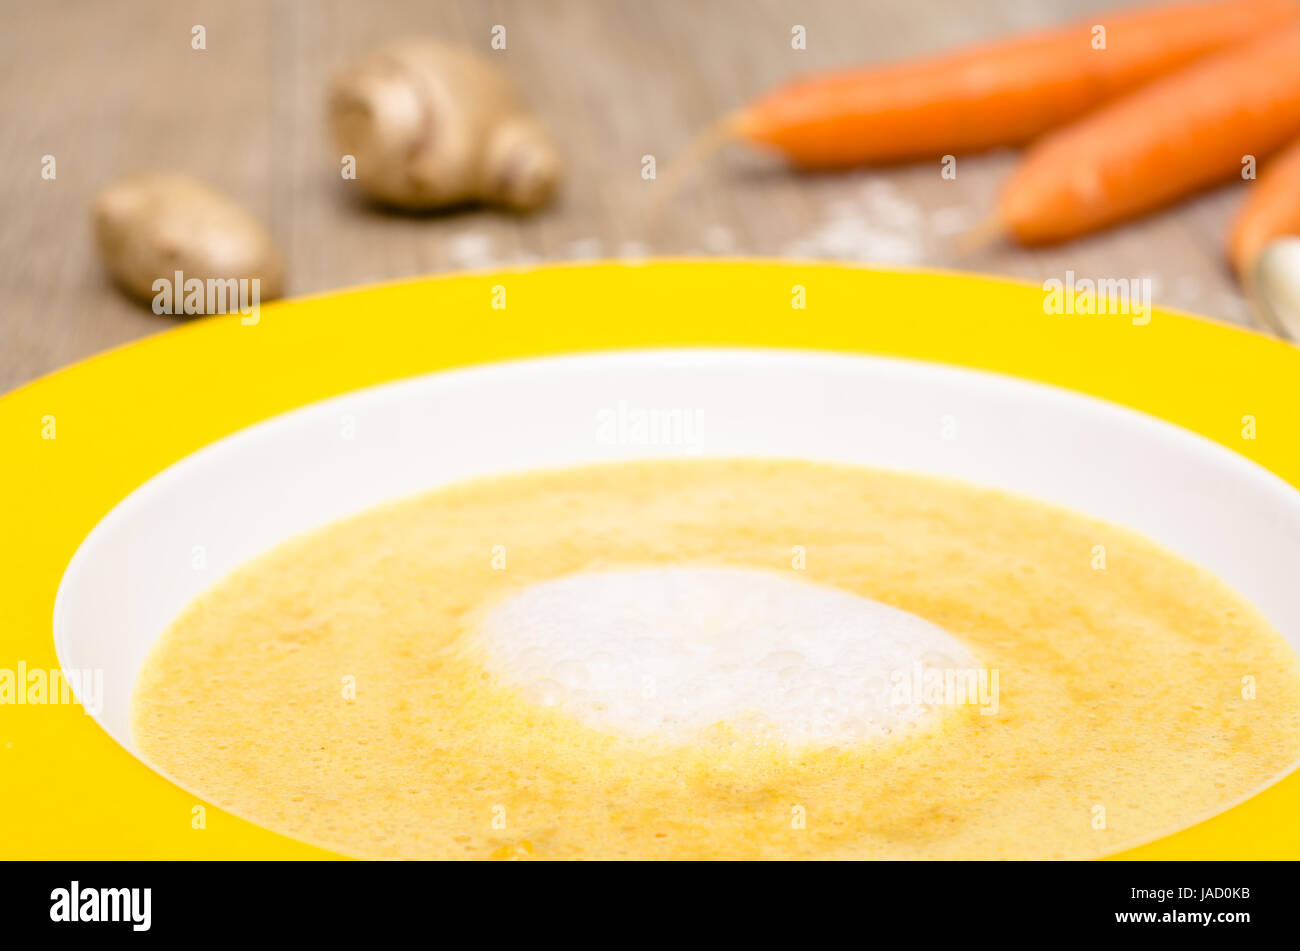 Schaum von Kokosmilch auf Suppe mit Karotten in einem Teller Stock Photo